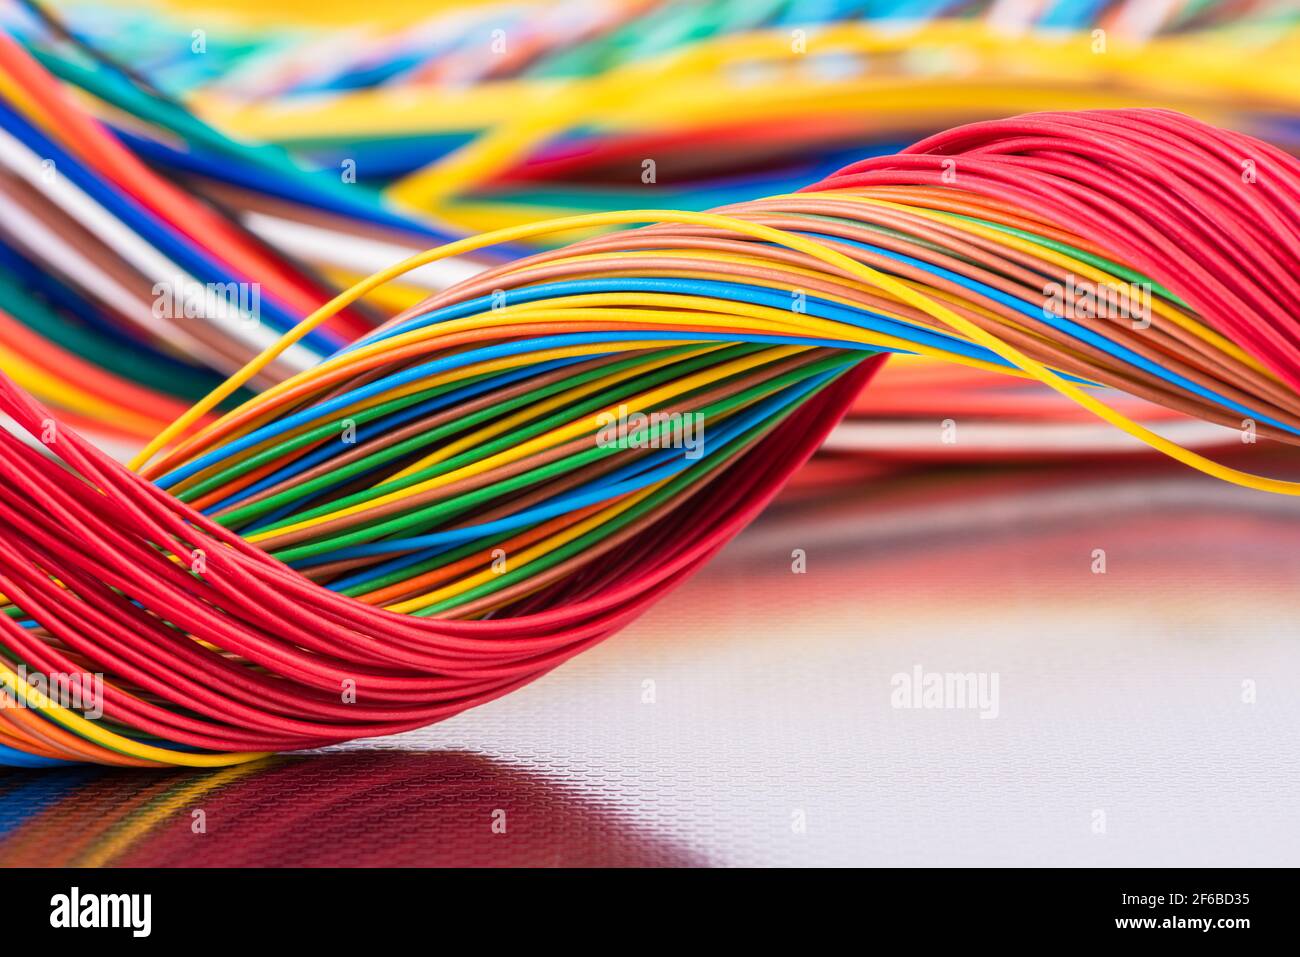 Cavo elettrico e per telecomunicazioni colorato su una superficie metallica lucida con riflessi Foto Stock